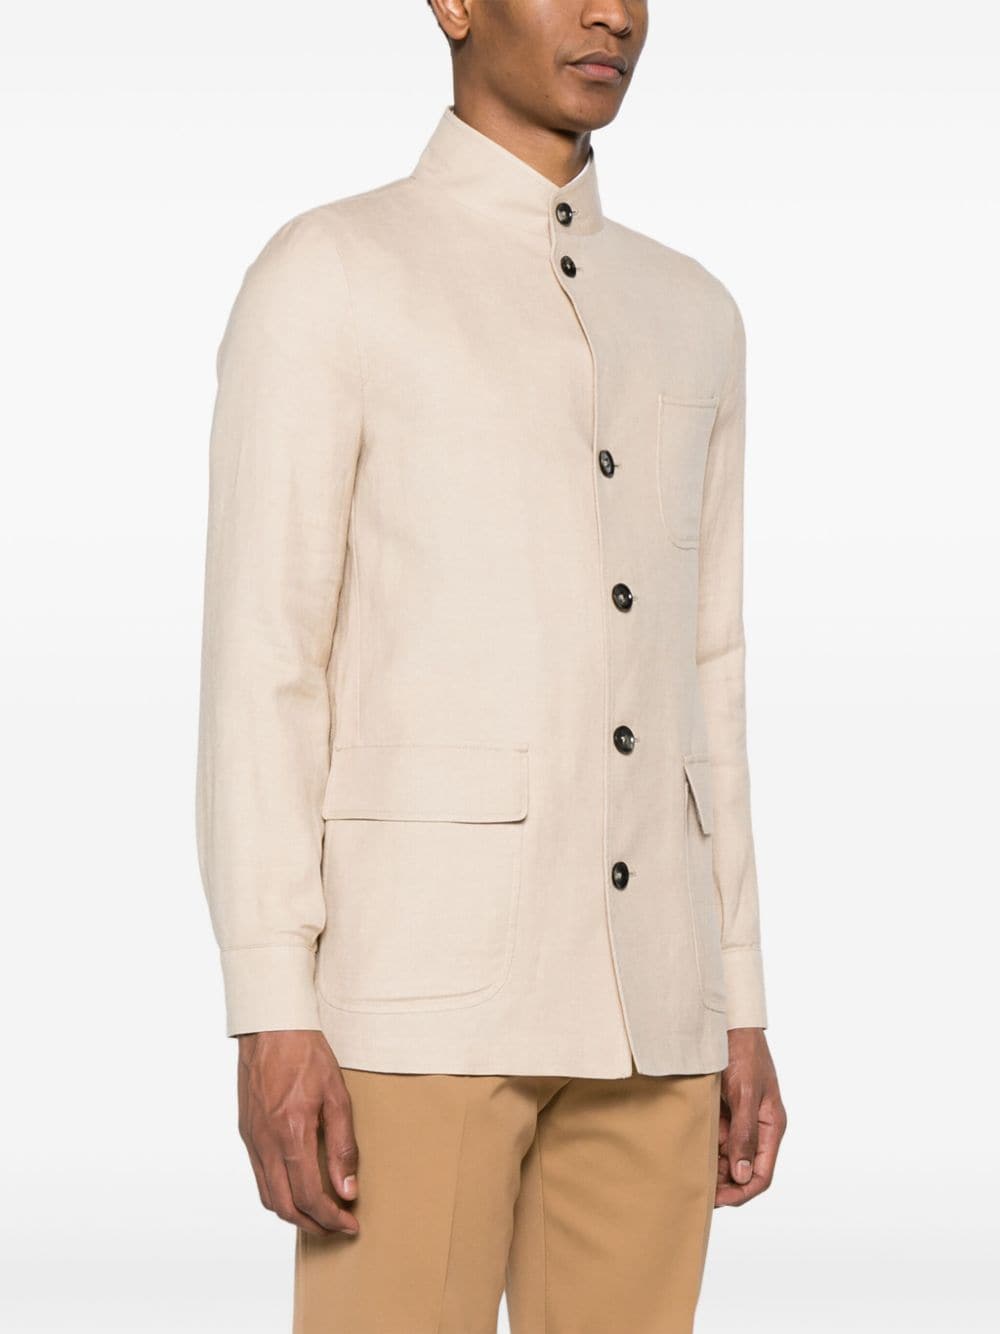 Zegna linen-blend Shirt Jacket - Farfetch